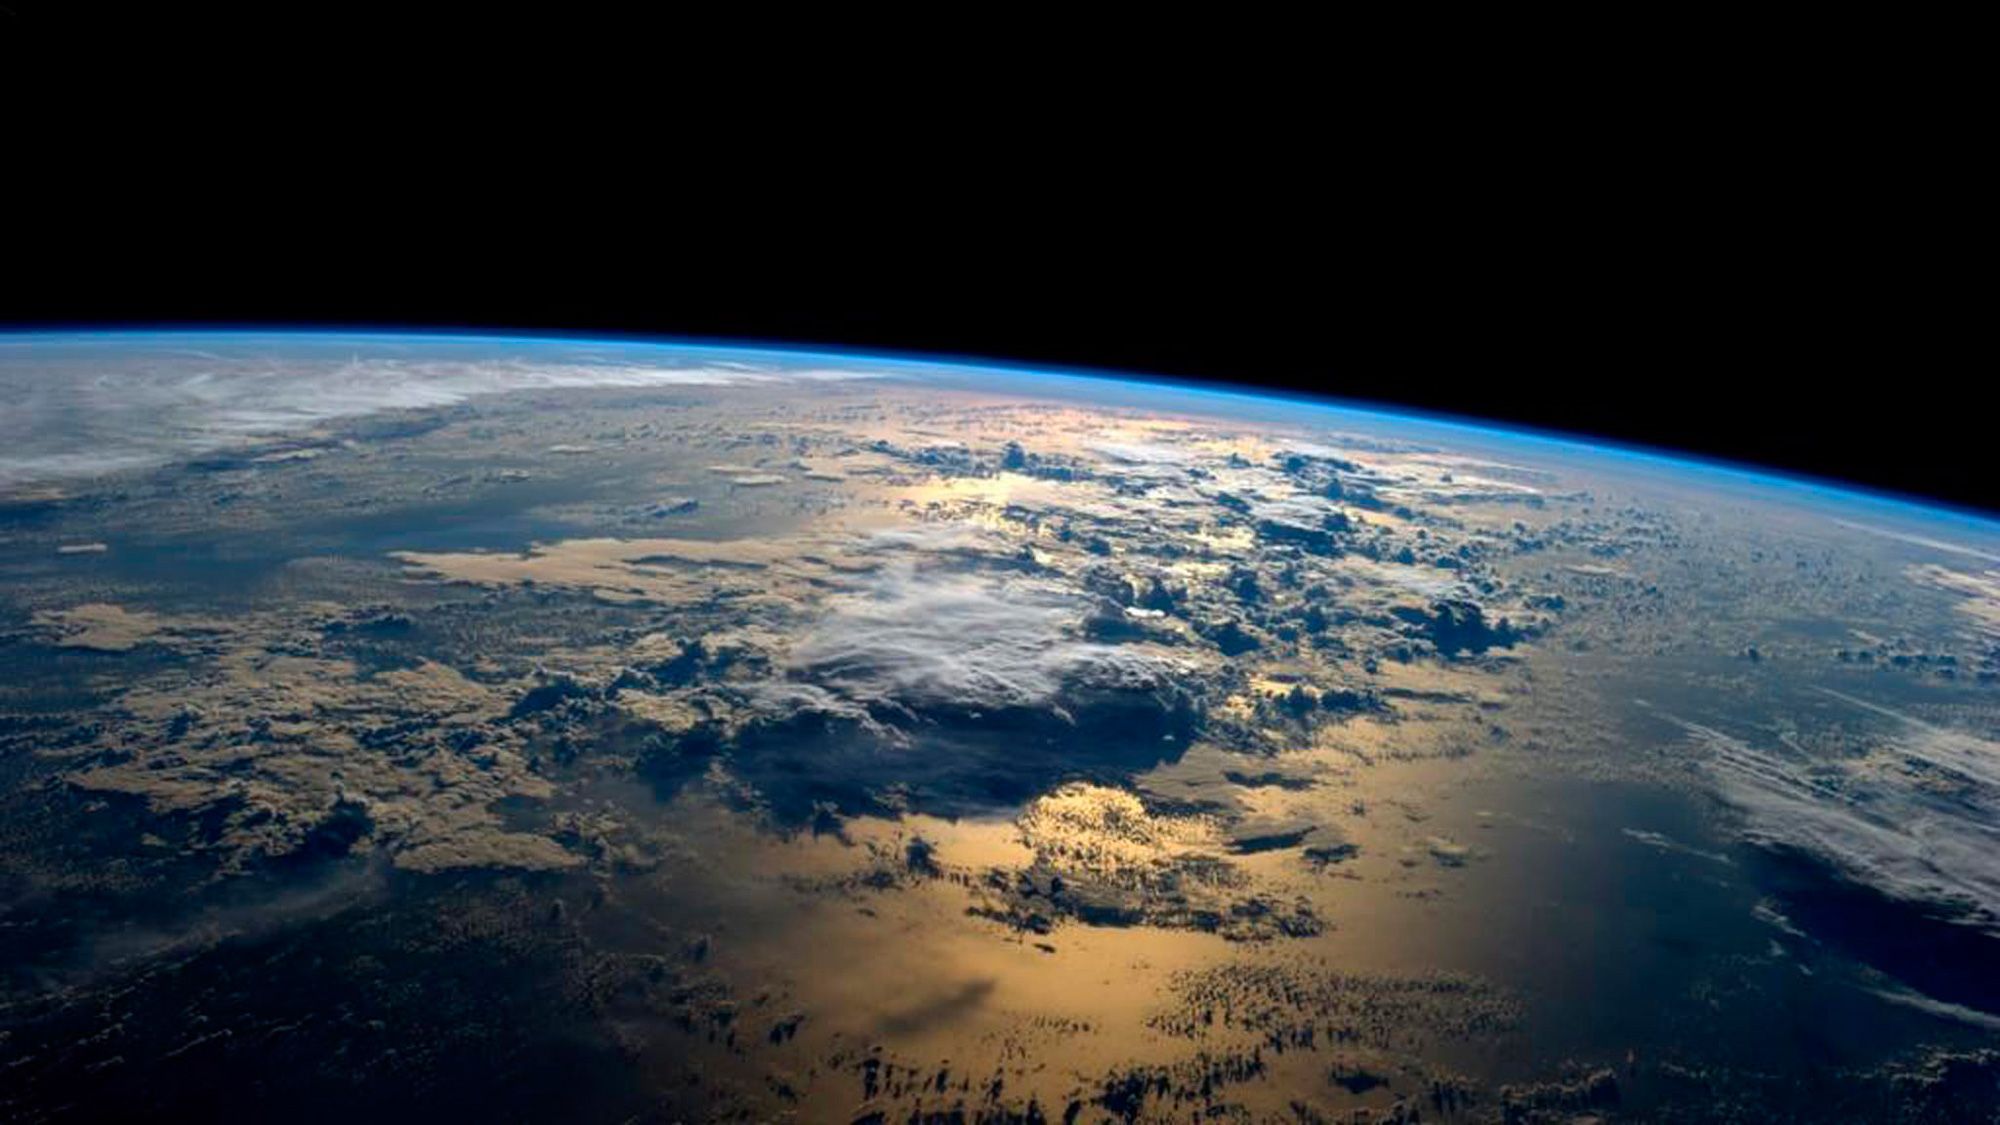  Erde Hintergrundbild 2000x1125. Ausstellung über den Weltraum mit überirdischer Bedeutung